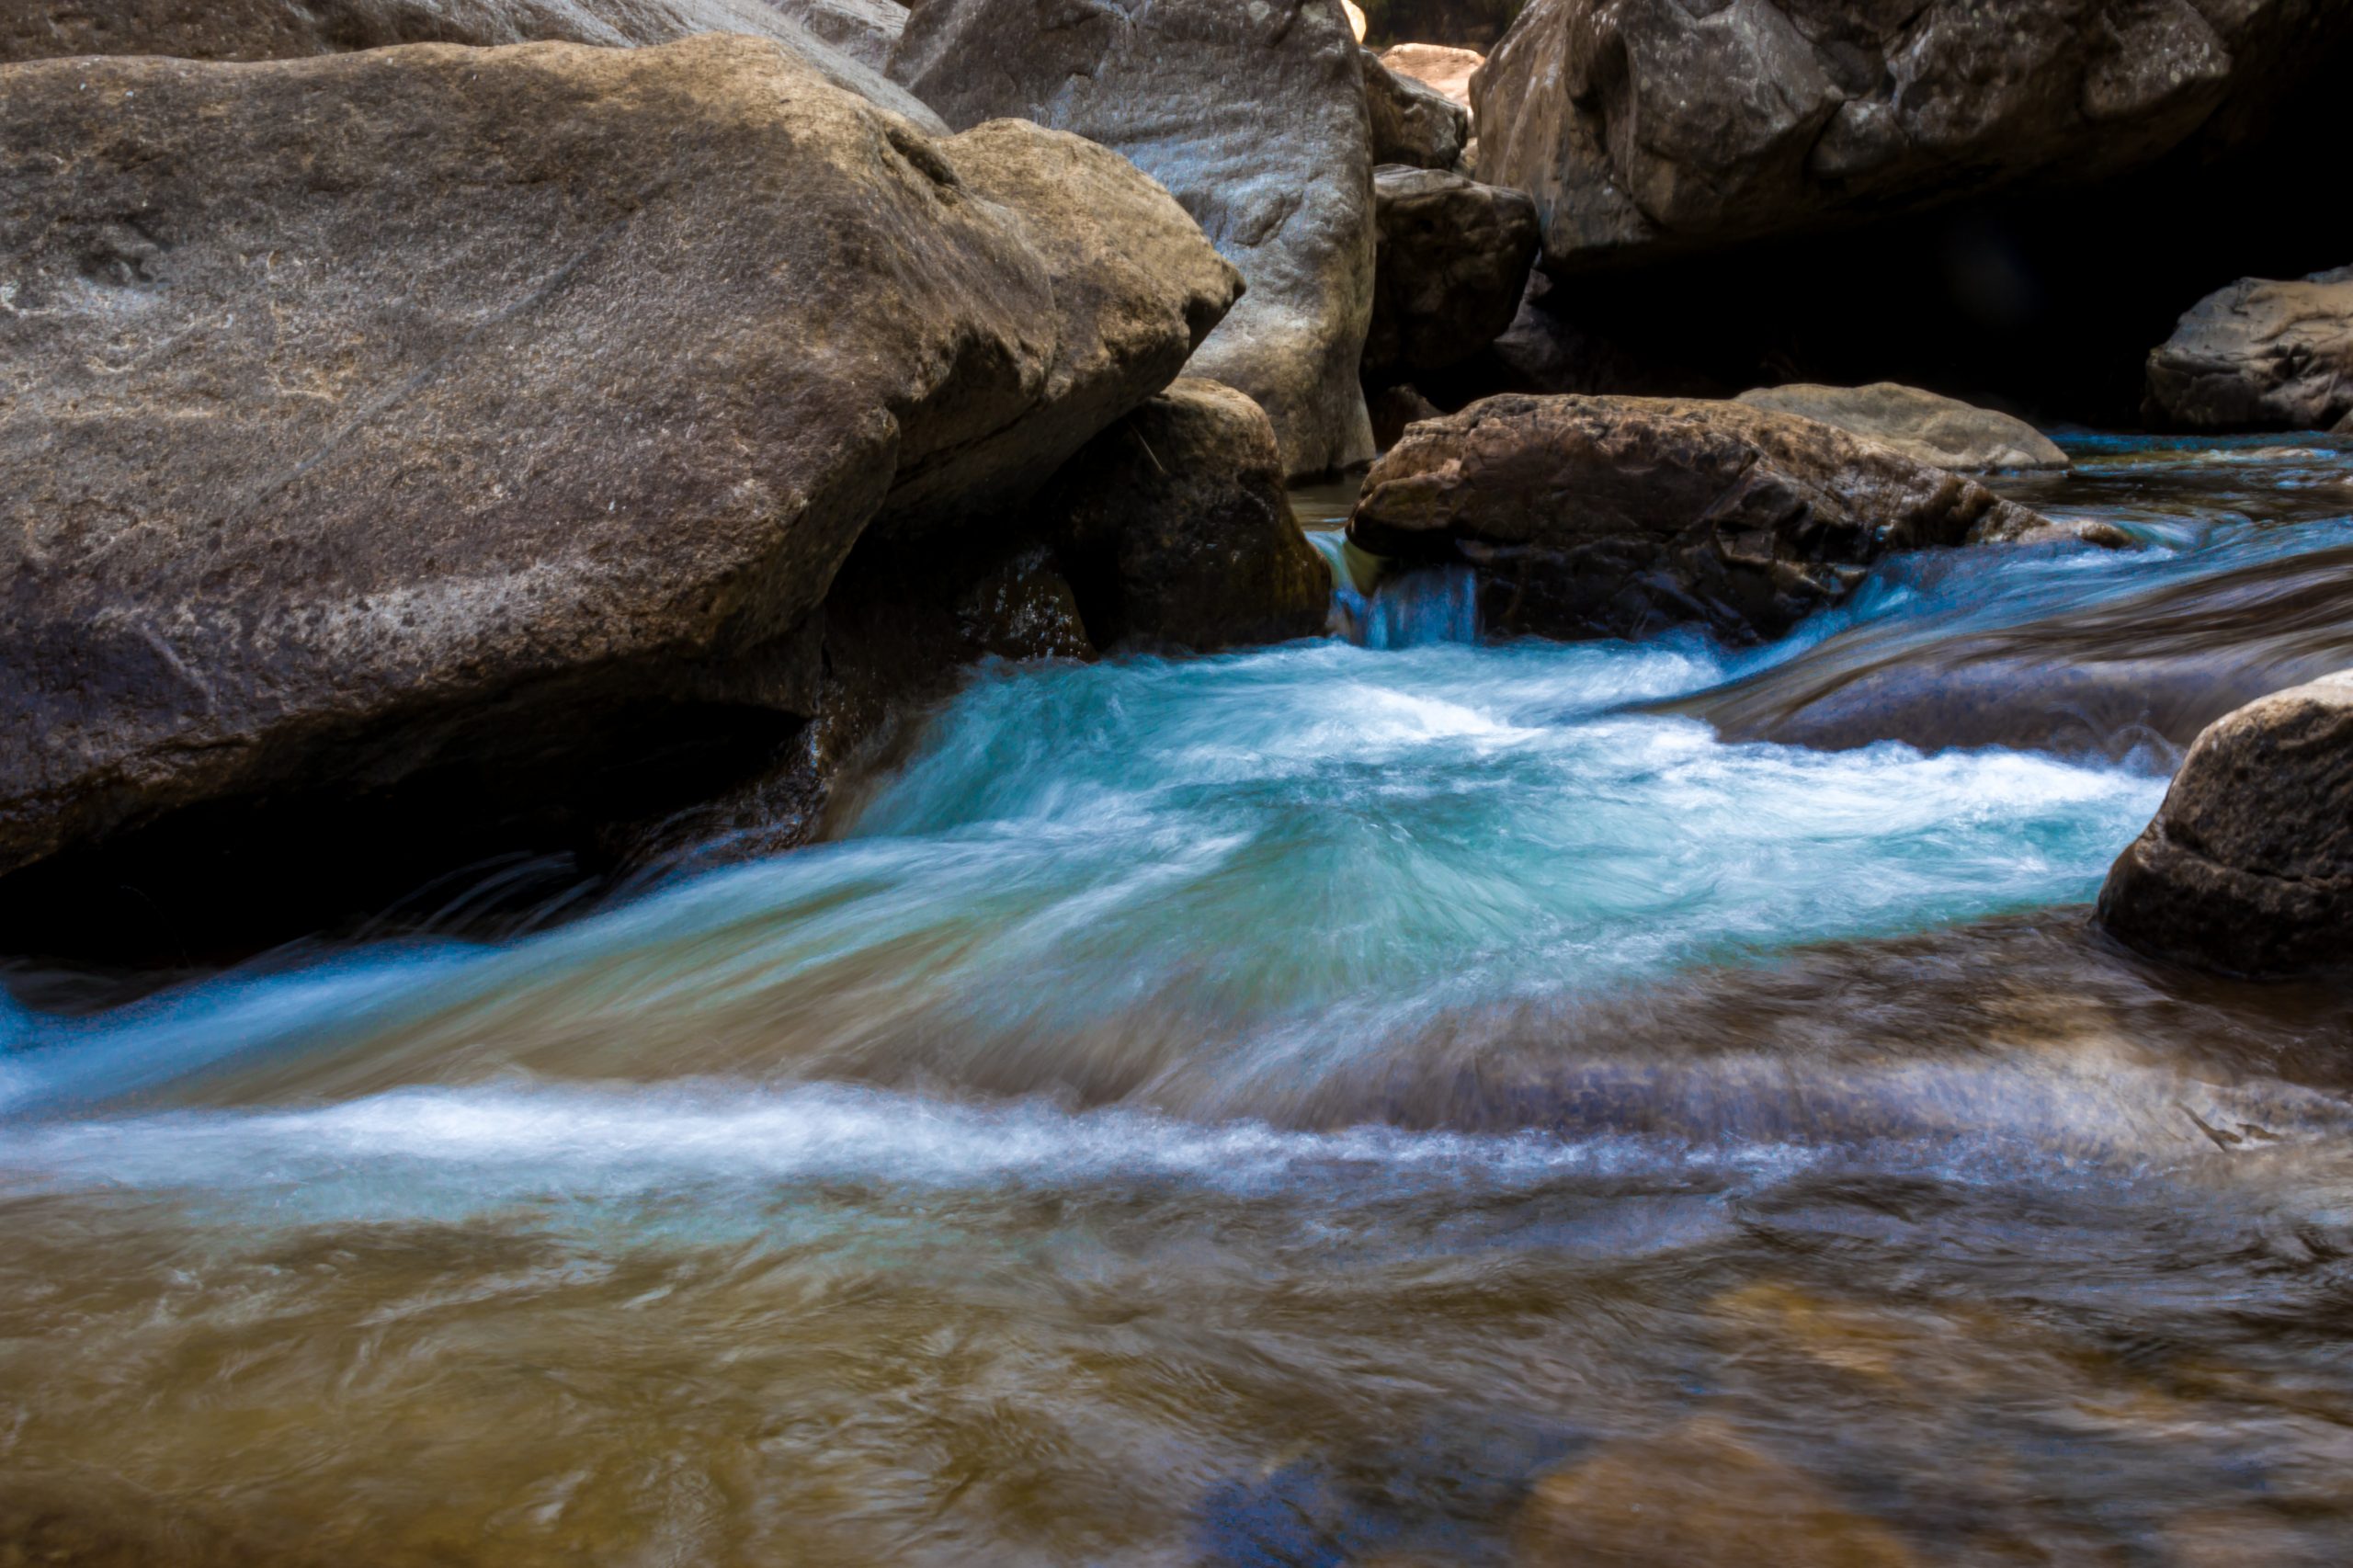 Water flow through rocks